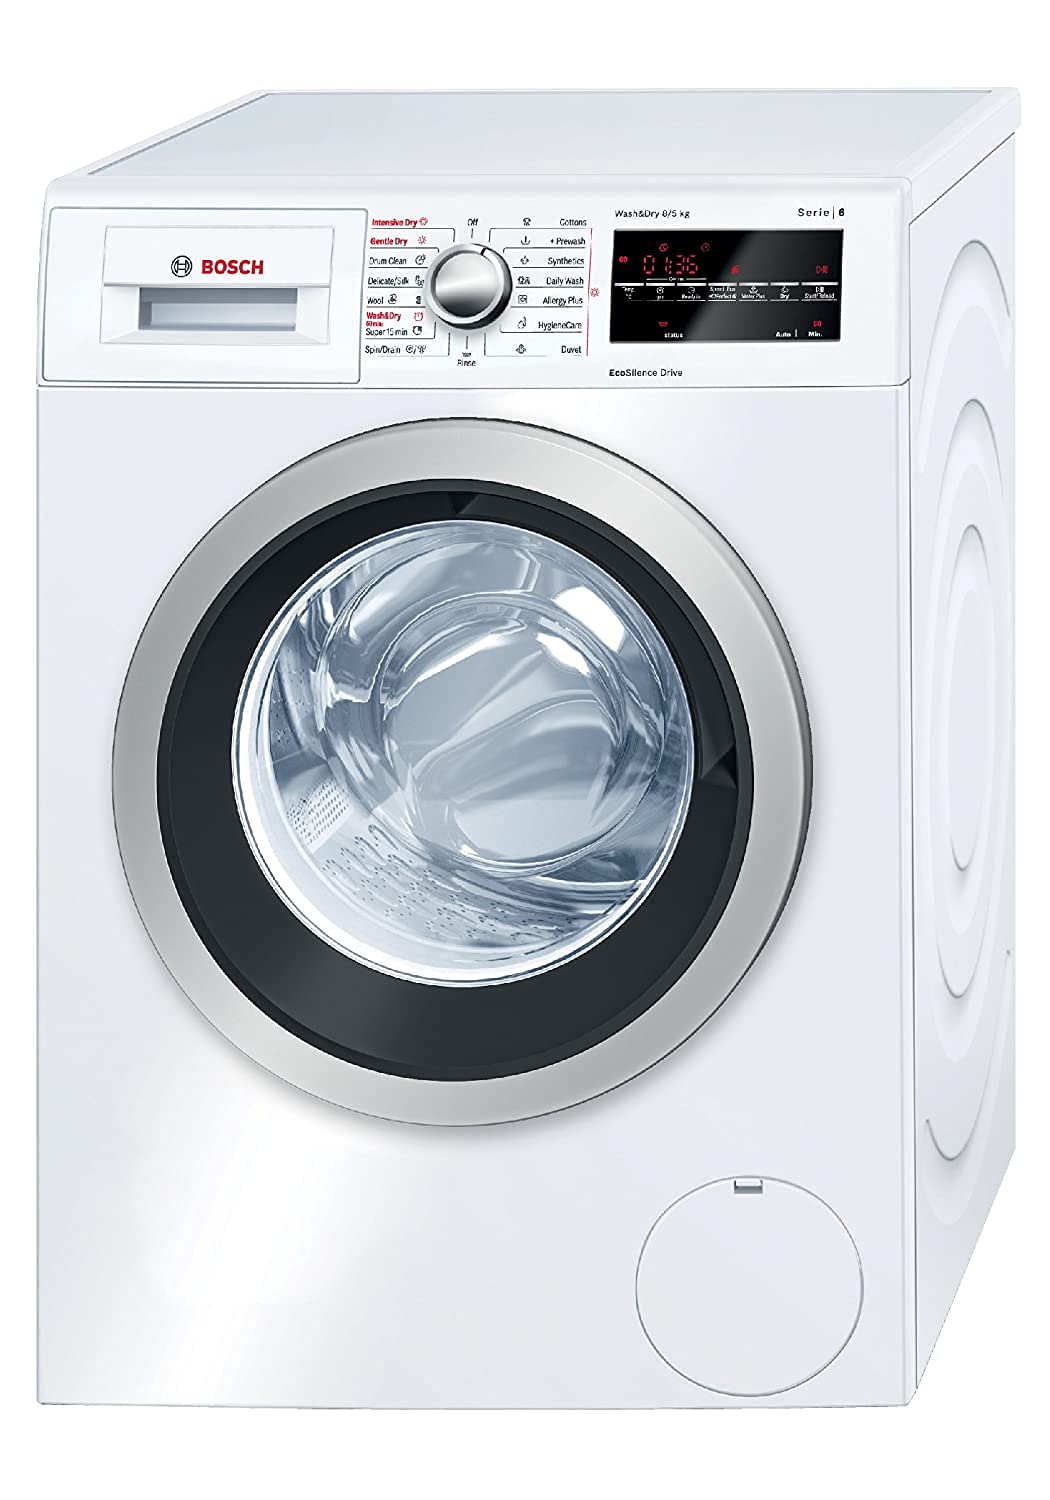 Amazon Deal: सर्दी में कपड़े न सूखने की समस्या को दूर कर देंगे ये Automatic Washer Dryer, सेल में 20 हजार से ज्यादा की छूट